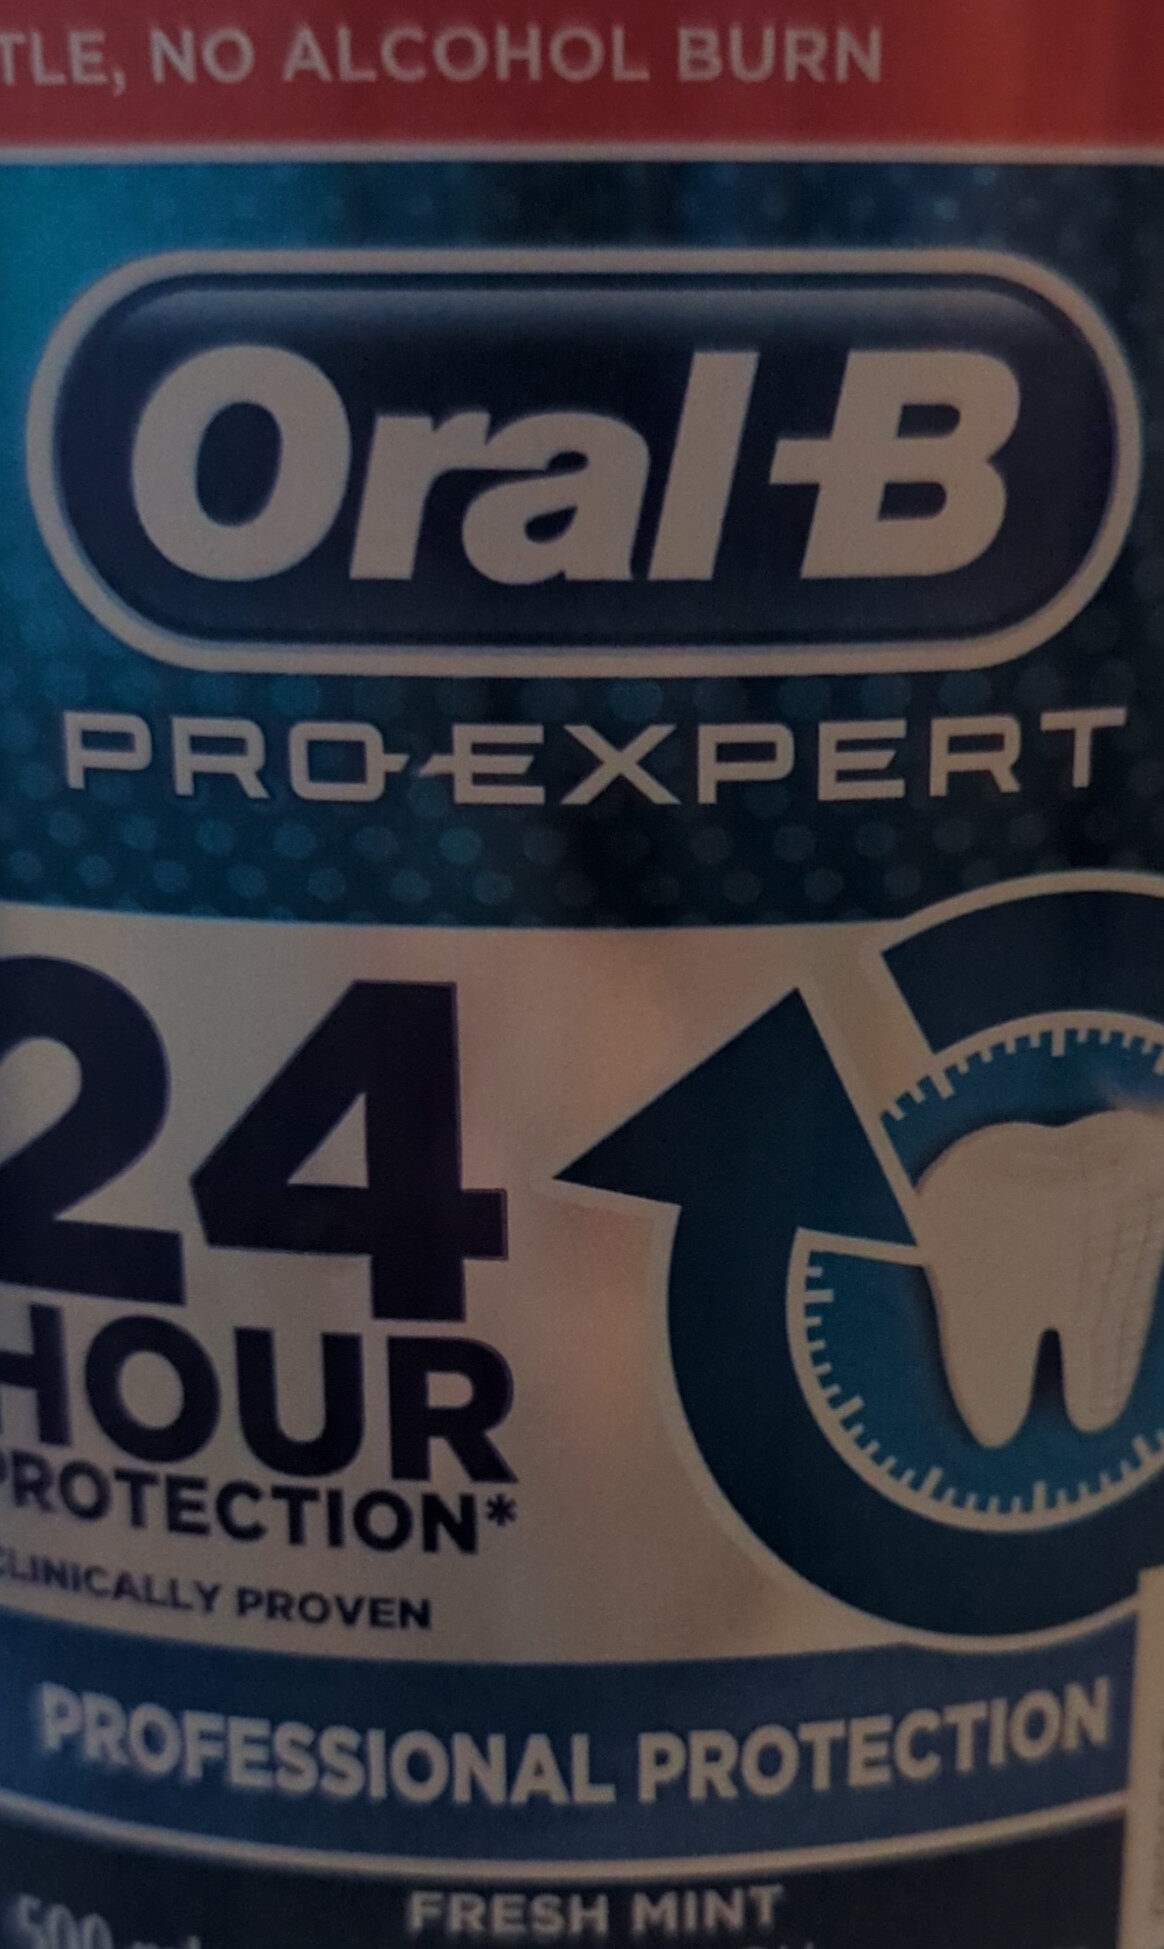 Pro-Expert Fresh Mint Mouthwash - Product - en